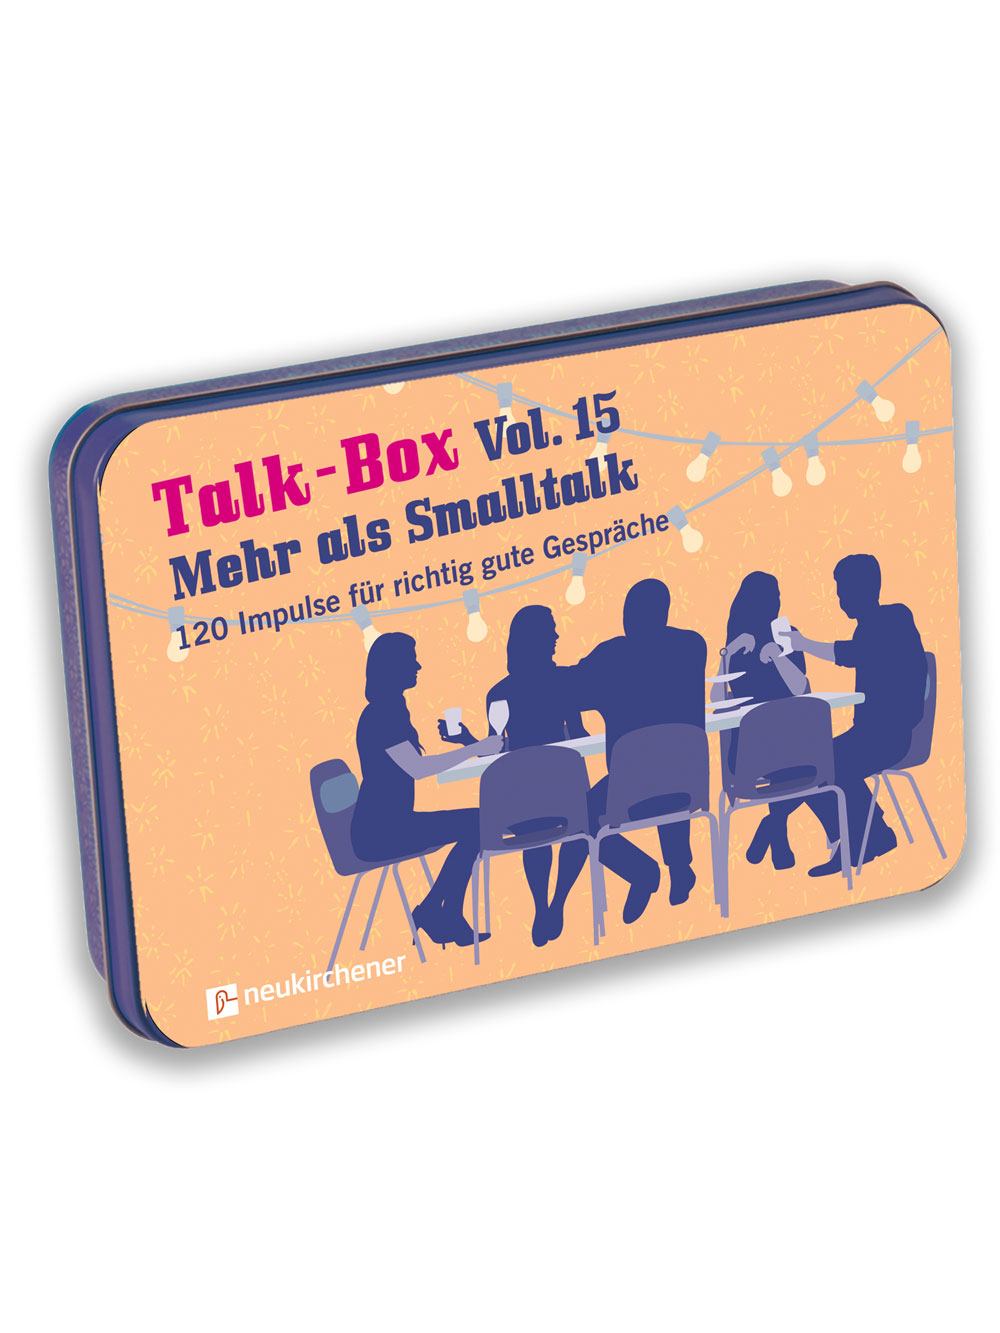 Talk-Box Vol. 15 – Mehr als Smalltalk